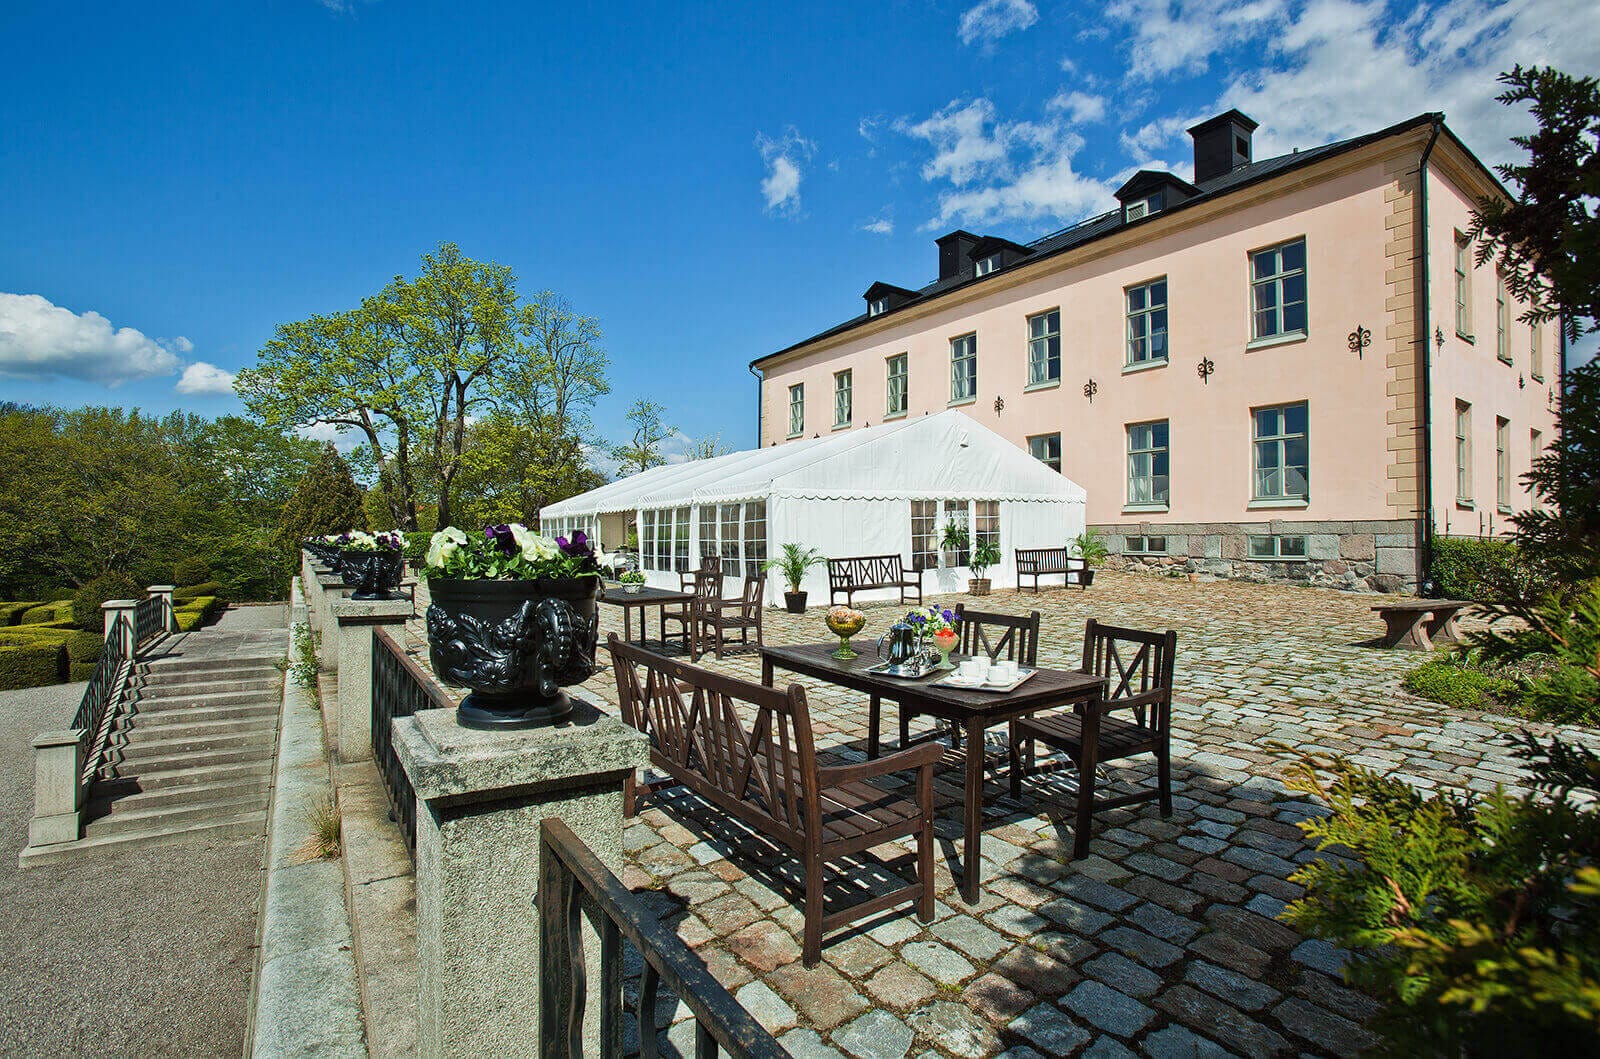 På Hesselby Slott kan du servera välkomstdrink och middag utomhus på slottsterrassen